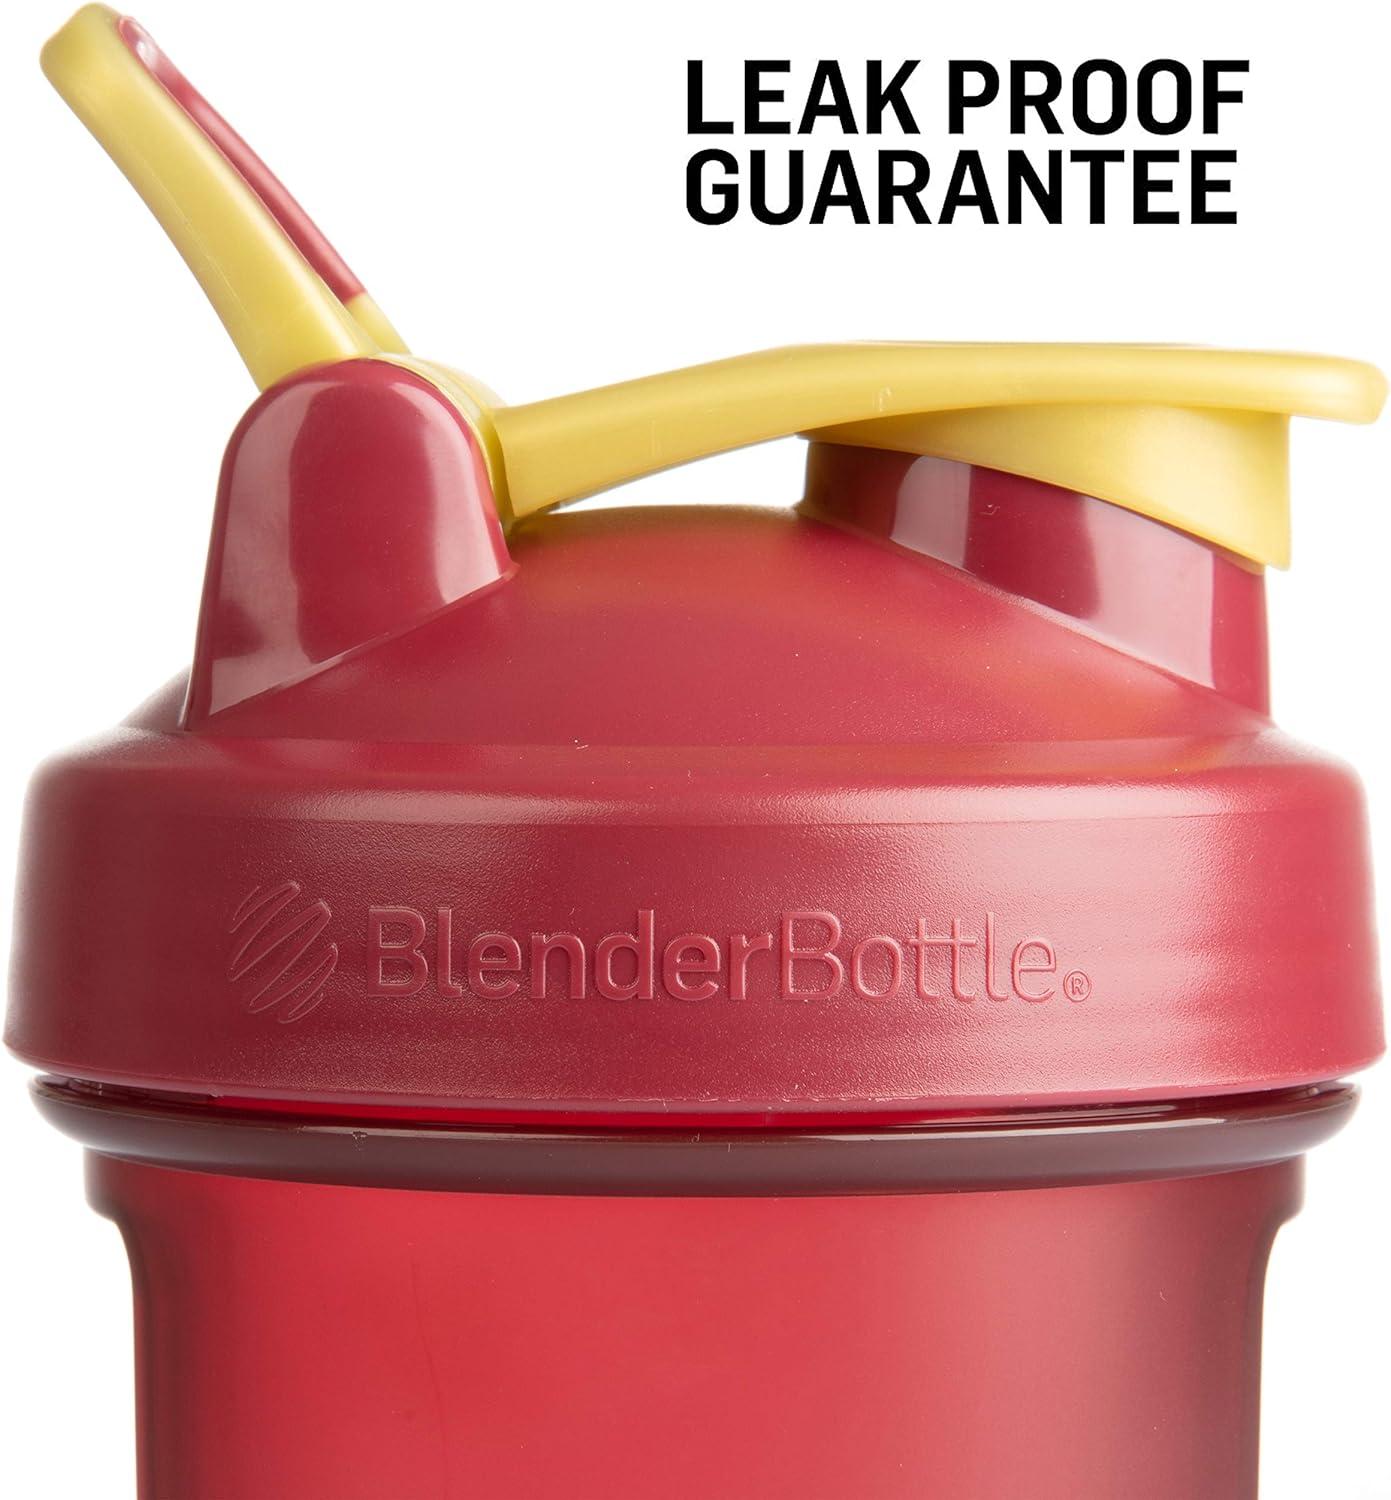 BlenderBottle Harry Potter Pro Series Shaker Bottles, 28 oz - as